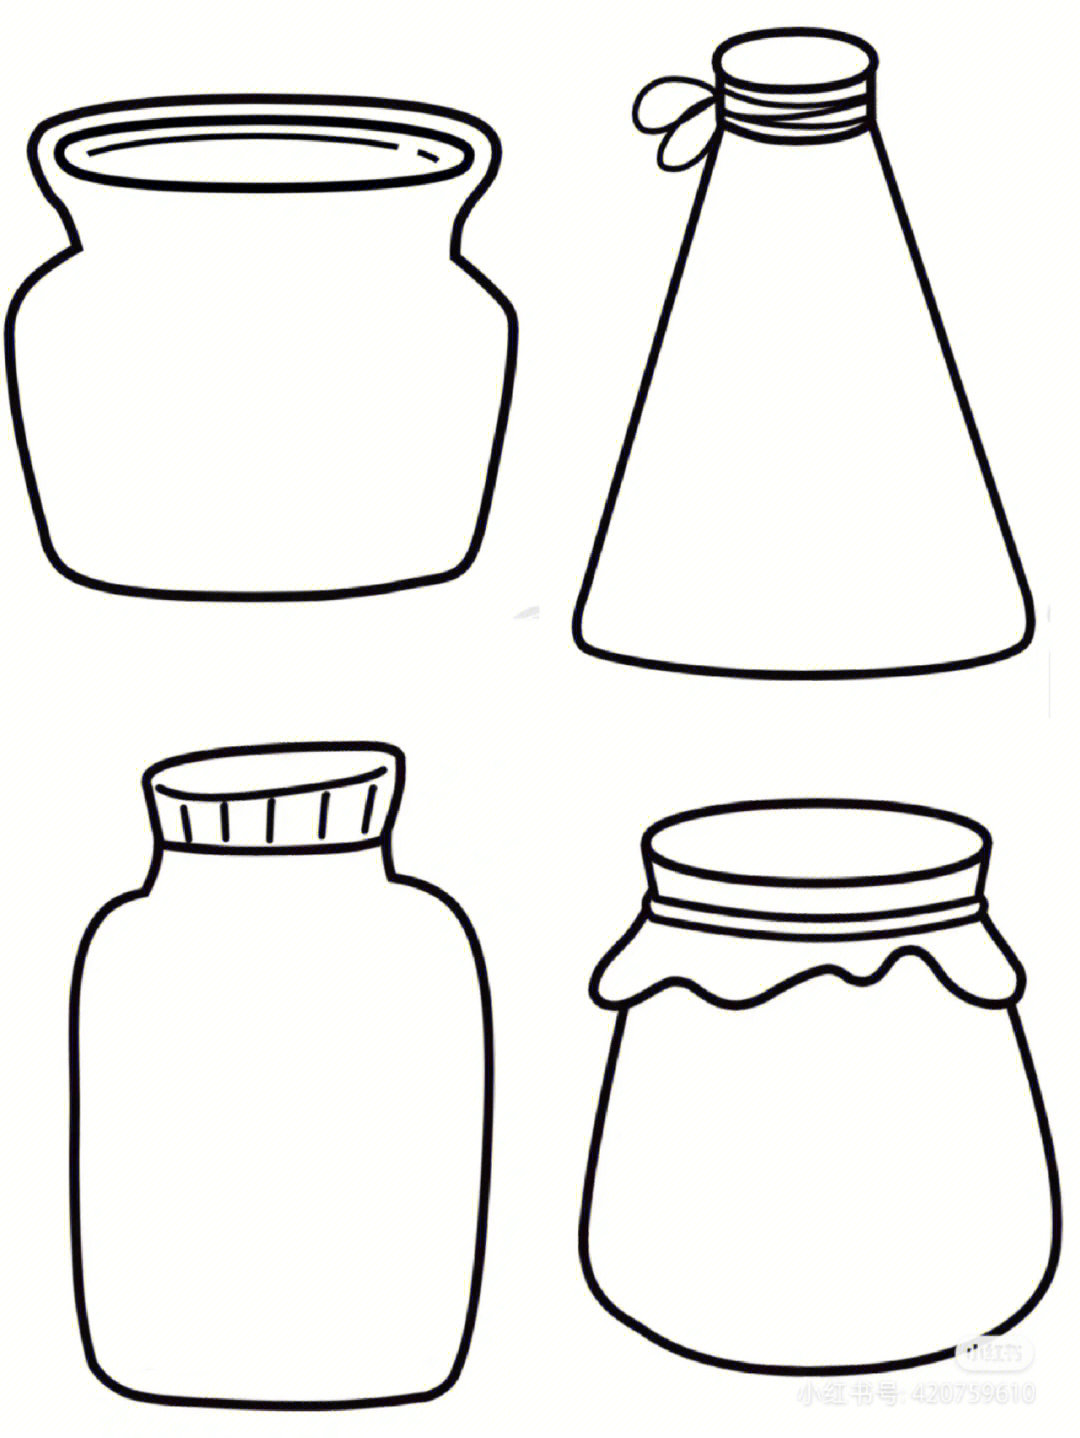 瓶瓶罐罐怎么画简单图片